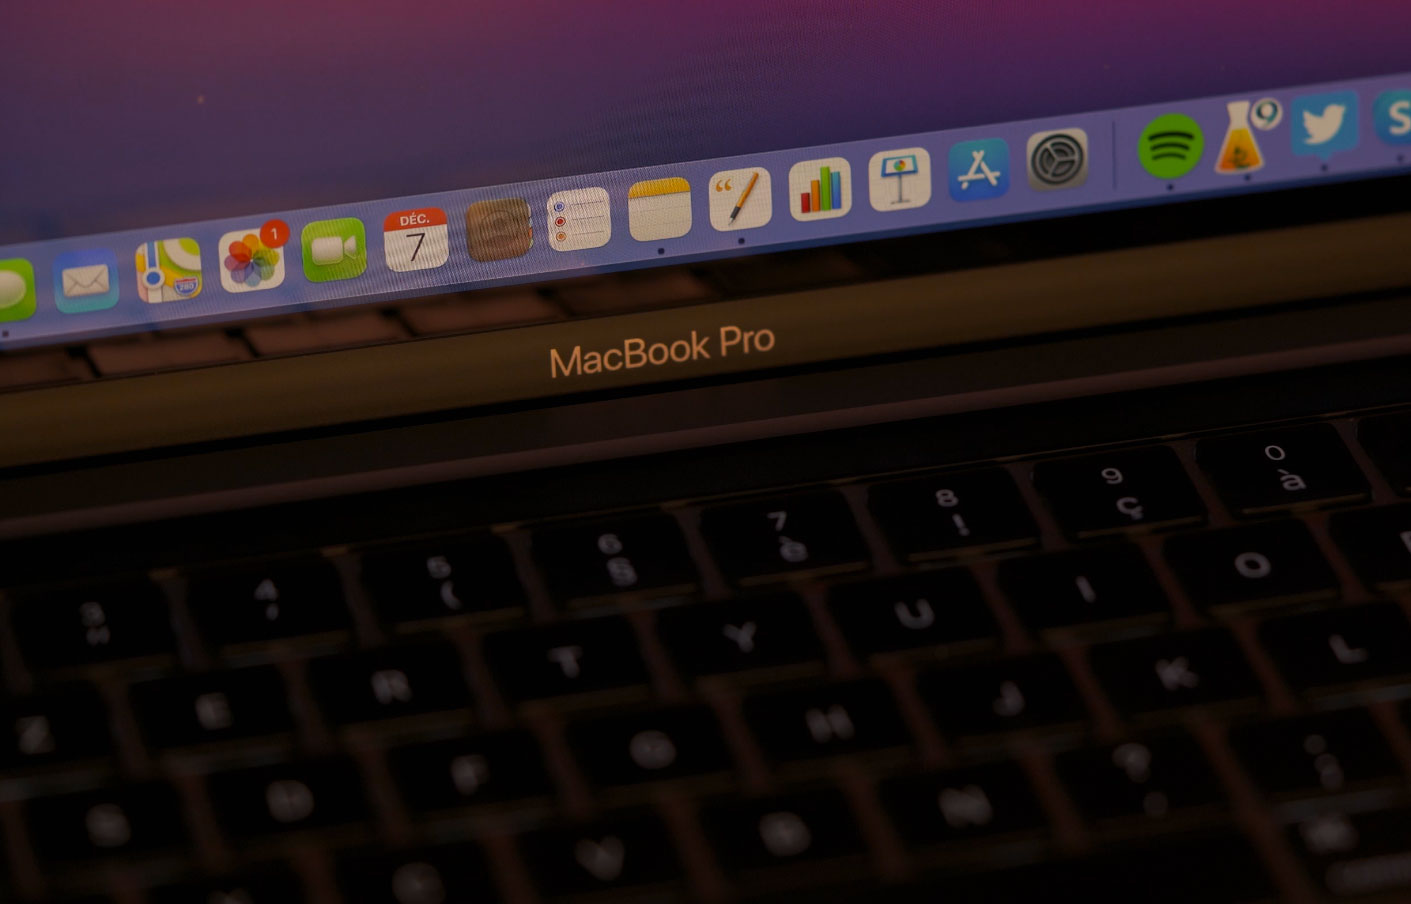  Apple a imaginé un clavier composé de touches-écrans